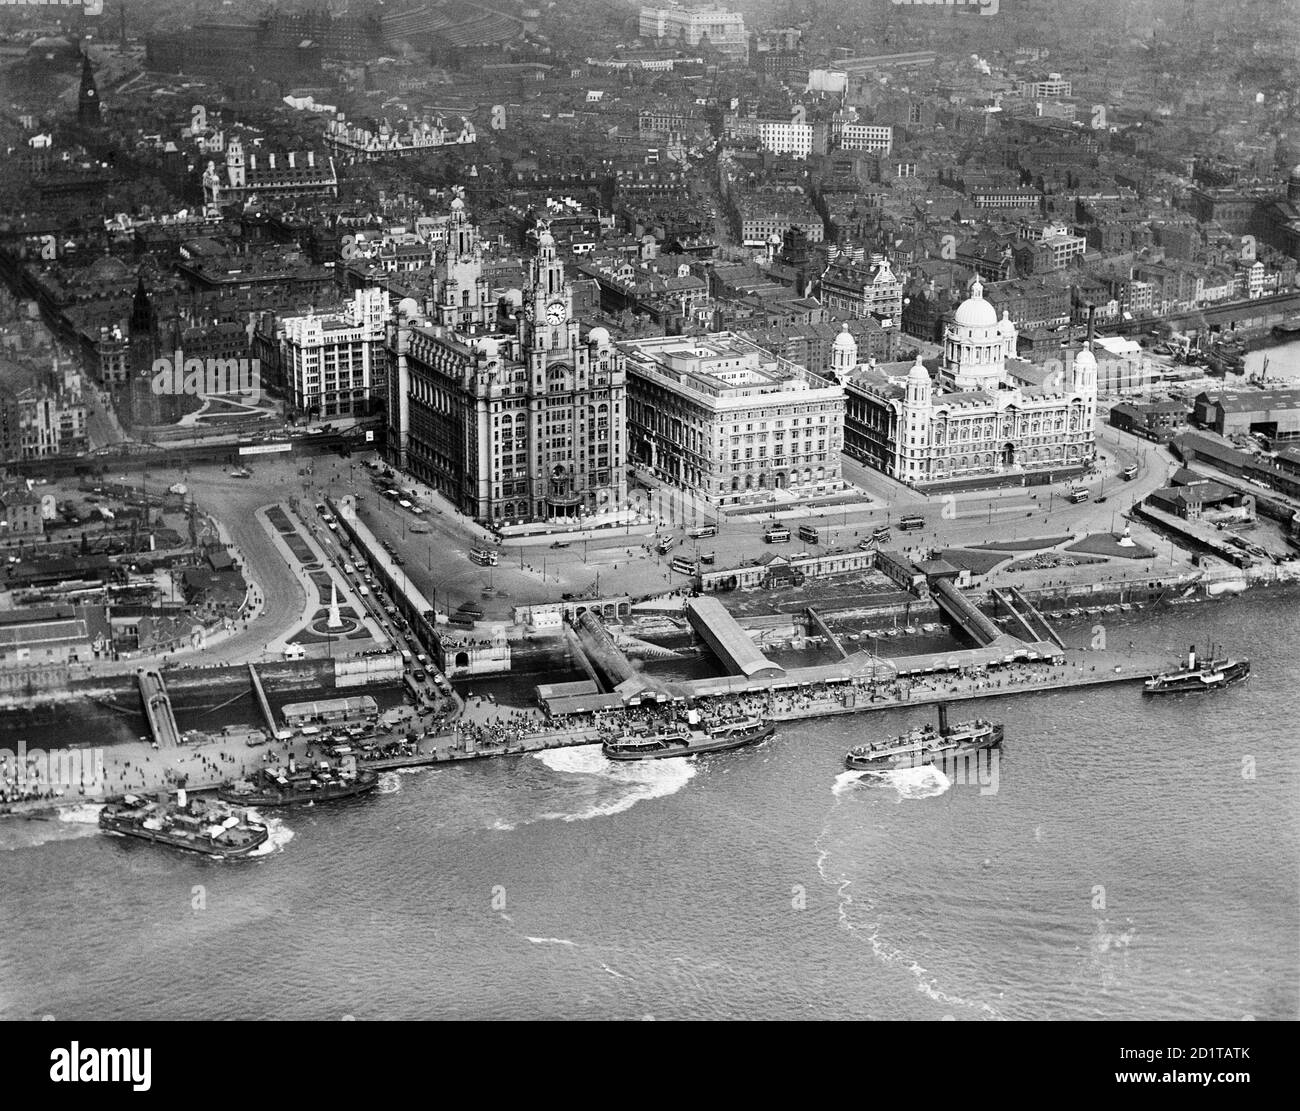 LIVERPOOL, Merseyside. Luftaufnahme des Liverpool Pier Head mit zahlreichen Fähren und kleinen Booten. Fotografiert im Jahr 1920. Aerofilms Collection (siehe Links). Stockfoto